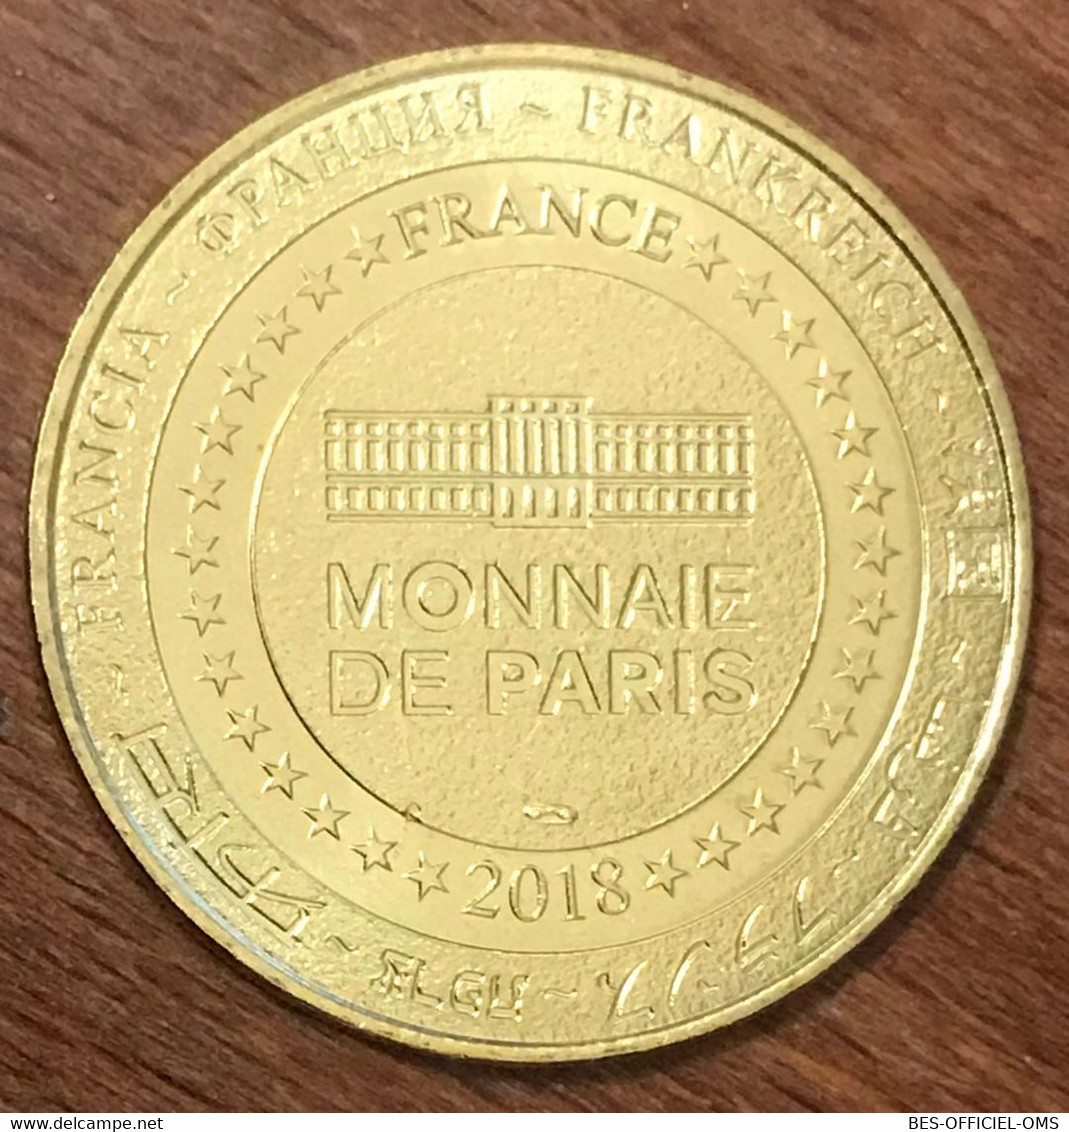 37 SACHÉ MUSÉE BALZAC MEDAILLE SOUVENIR MONNAIE DE PARIS 2018 JETON TOURISTIQUE MEDALS COINS TOKENS - 2018